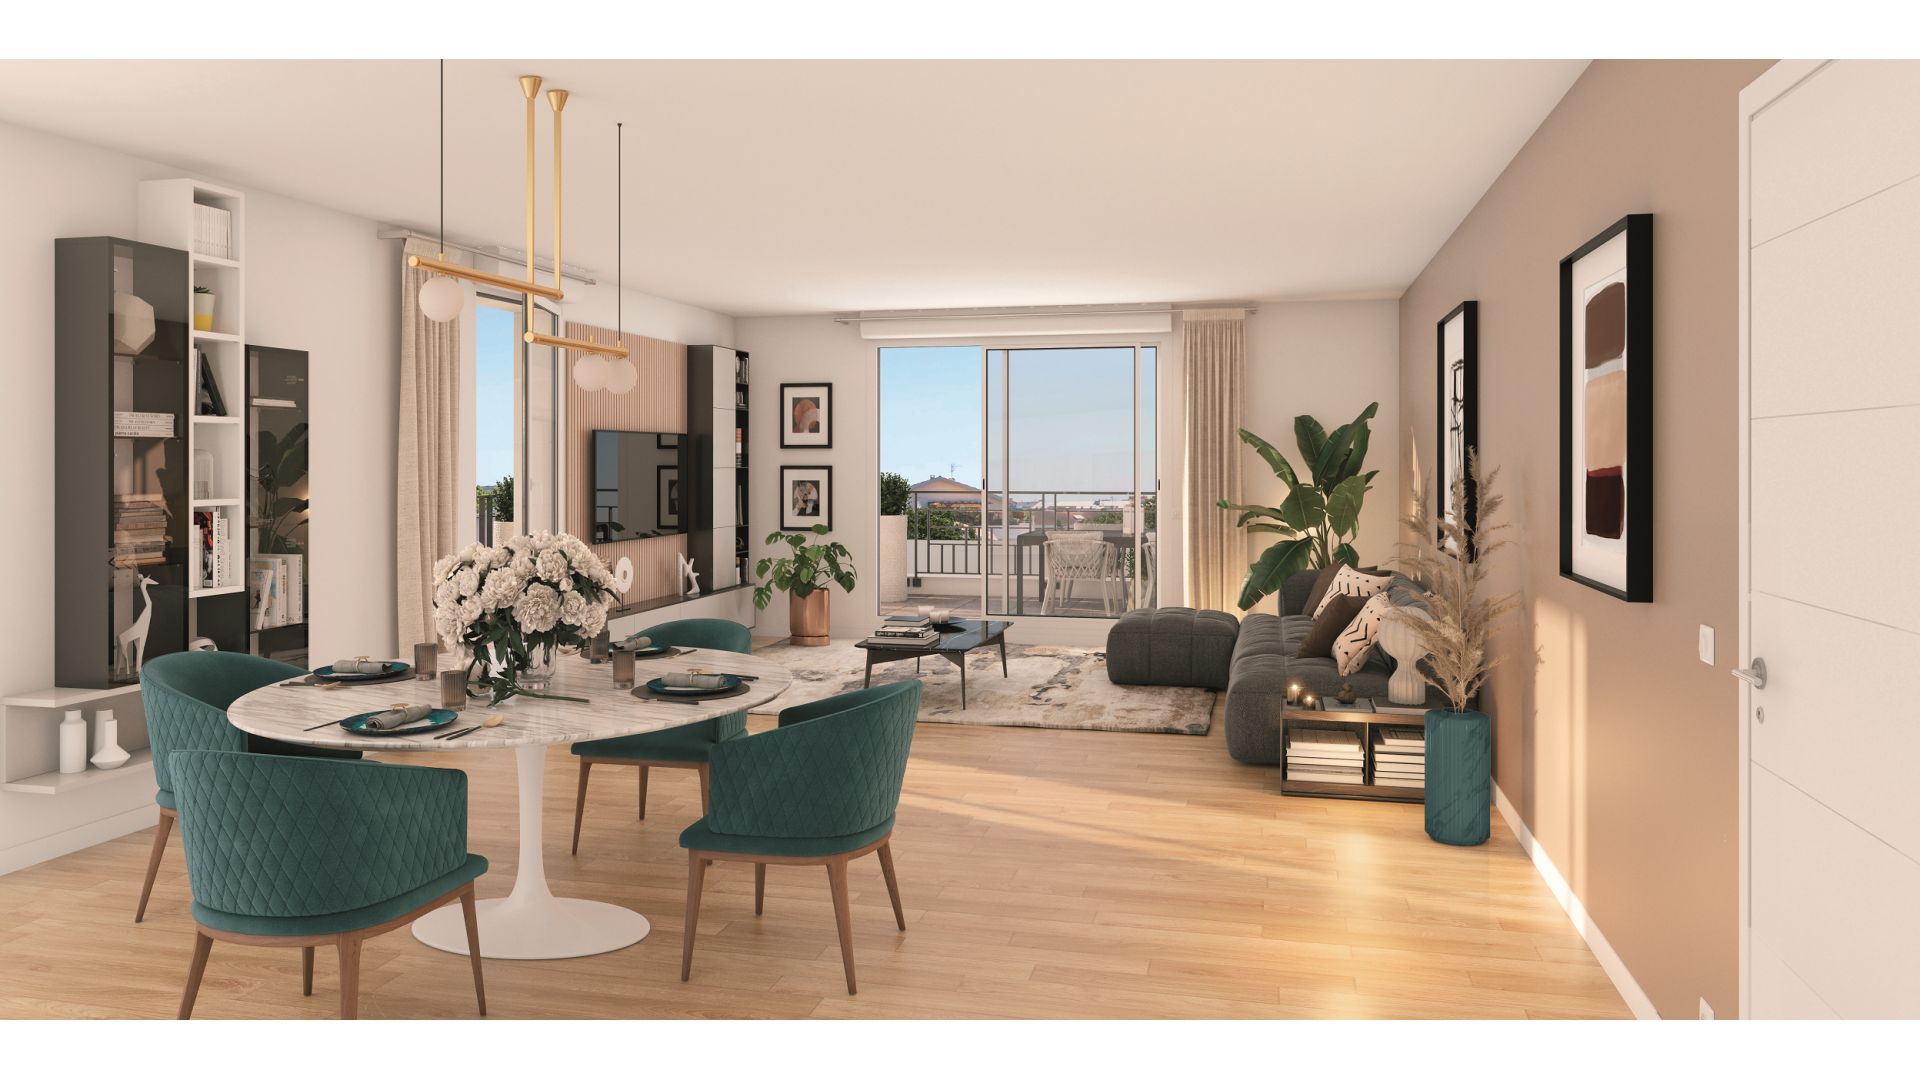 Greencity immobilier - achat appartements neufs du T1 au T5 - Résidence Les Jardins de l'Alma - 94100 Saint-Maur-des-Fossés - vue intérieure